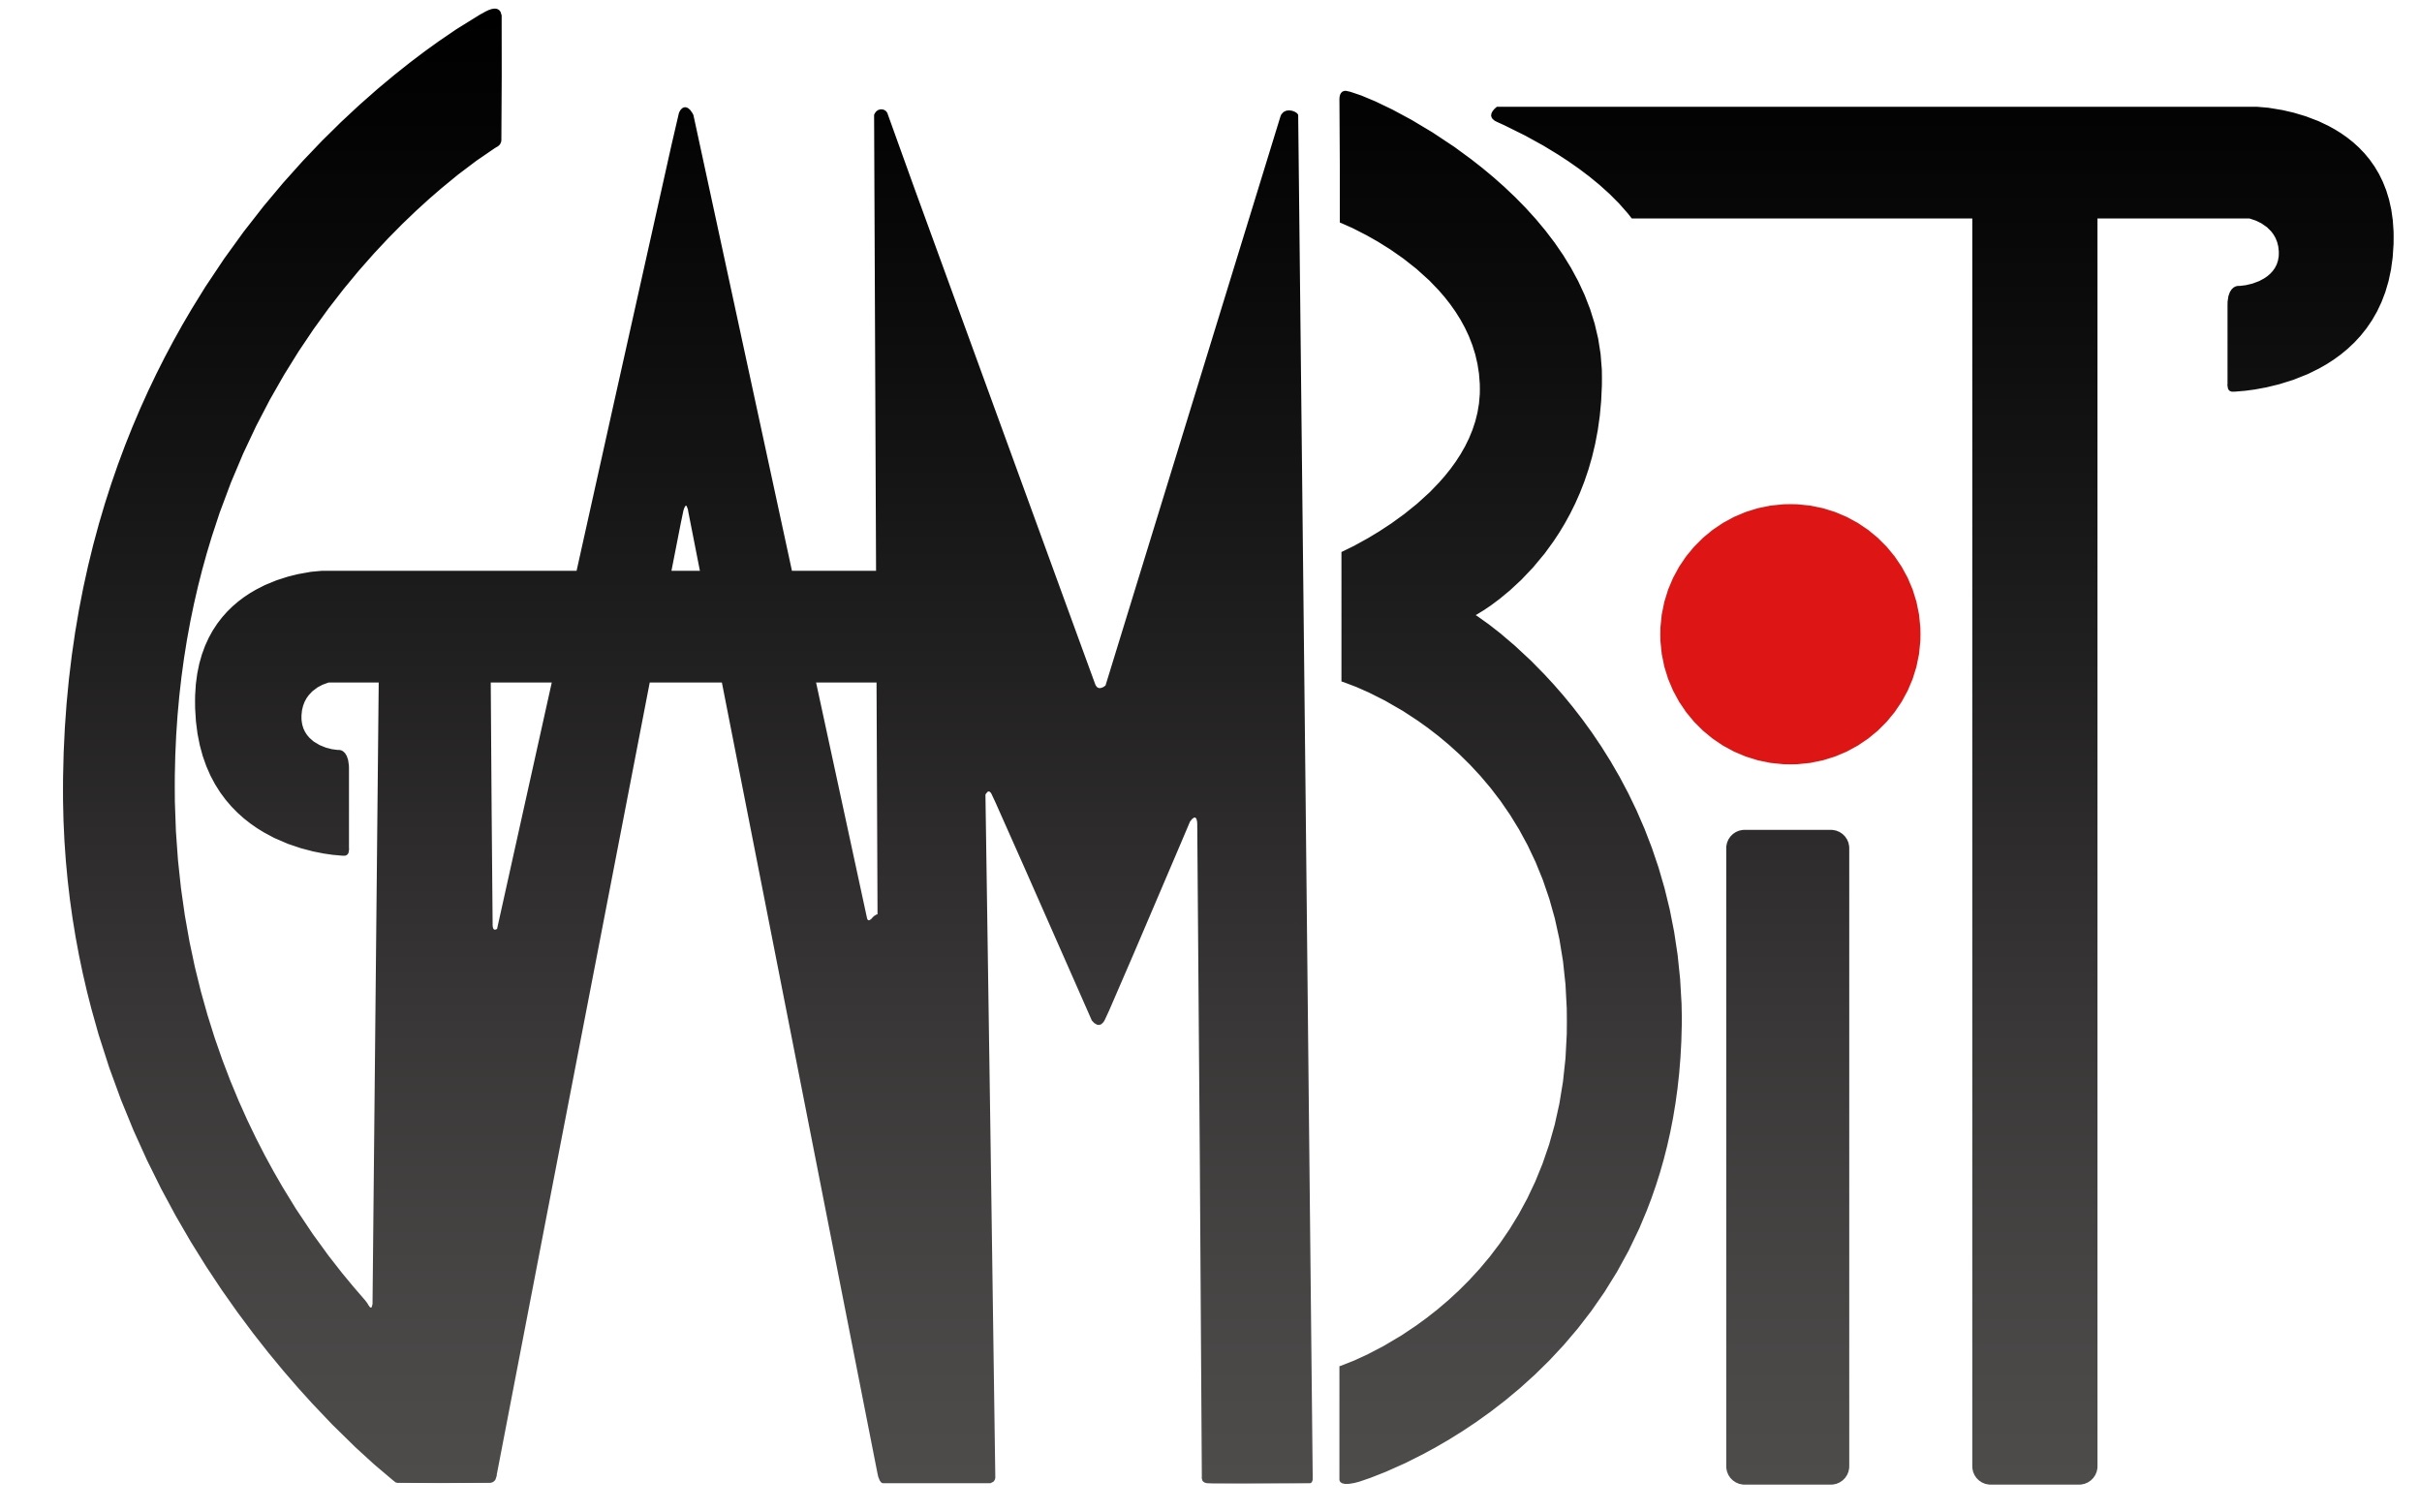 GAMBIT Logo.jpg 1366b48c58fe68f05da14ce32942ee45